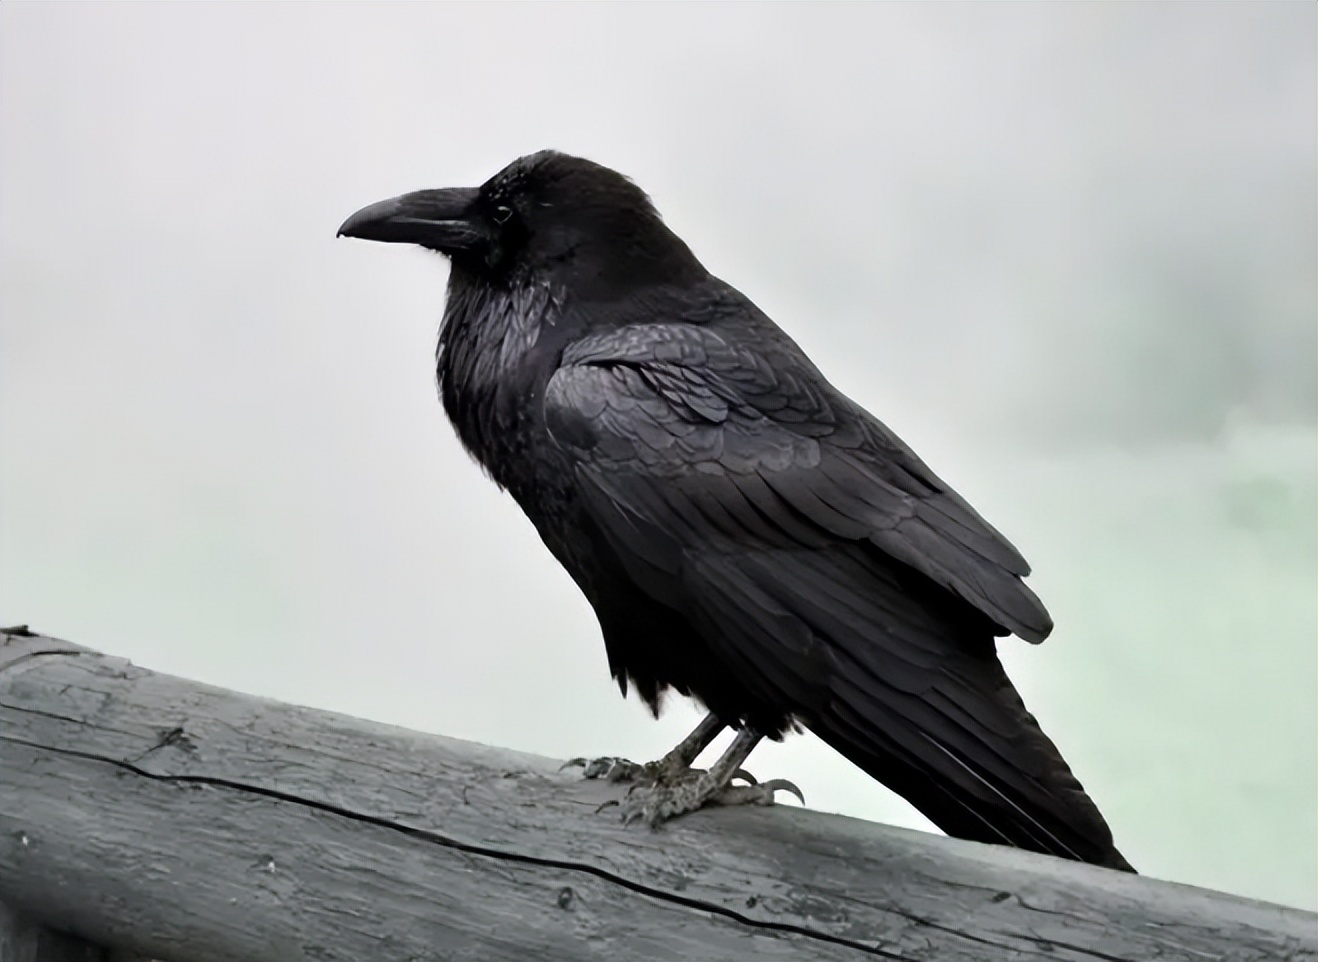 很明显,黑暗鸦的原型就来自于现实的乌鸦,名字的黑暗主要突出其属性